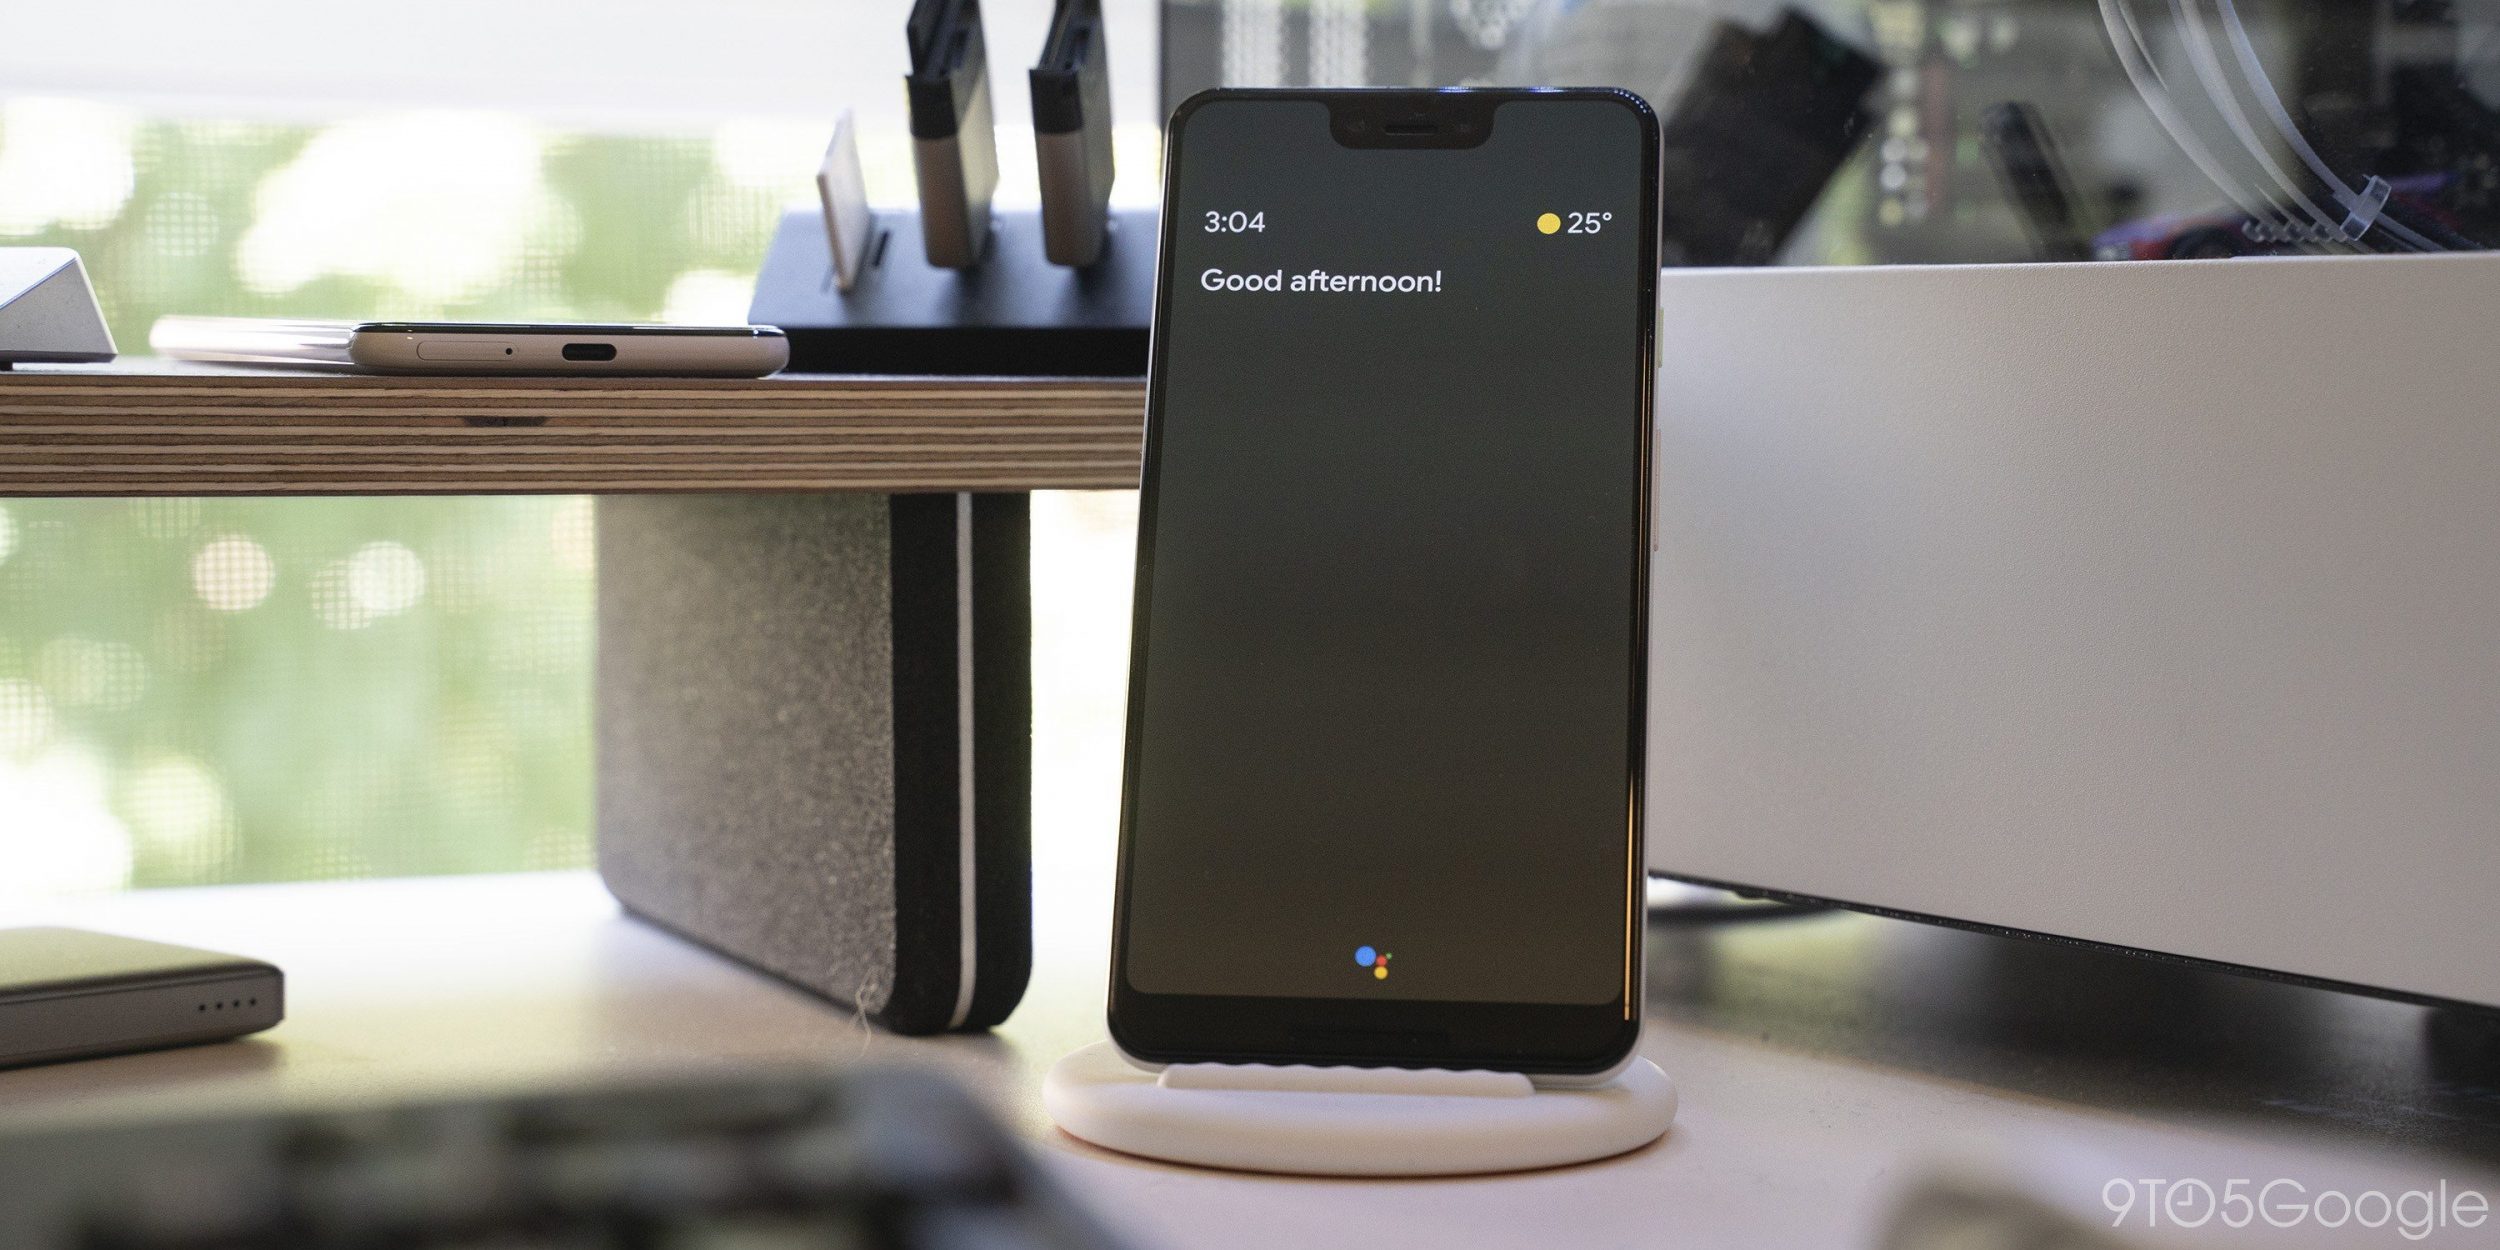 OnePlus e Google a braccetto per portavi la Ambient Mode: disponibile a partire da ora! (aggiornato)